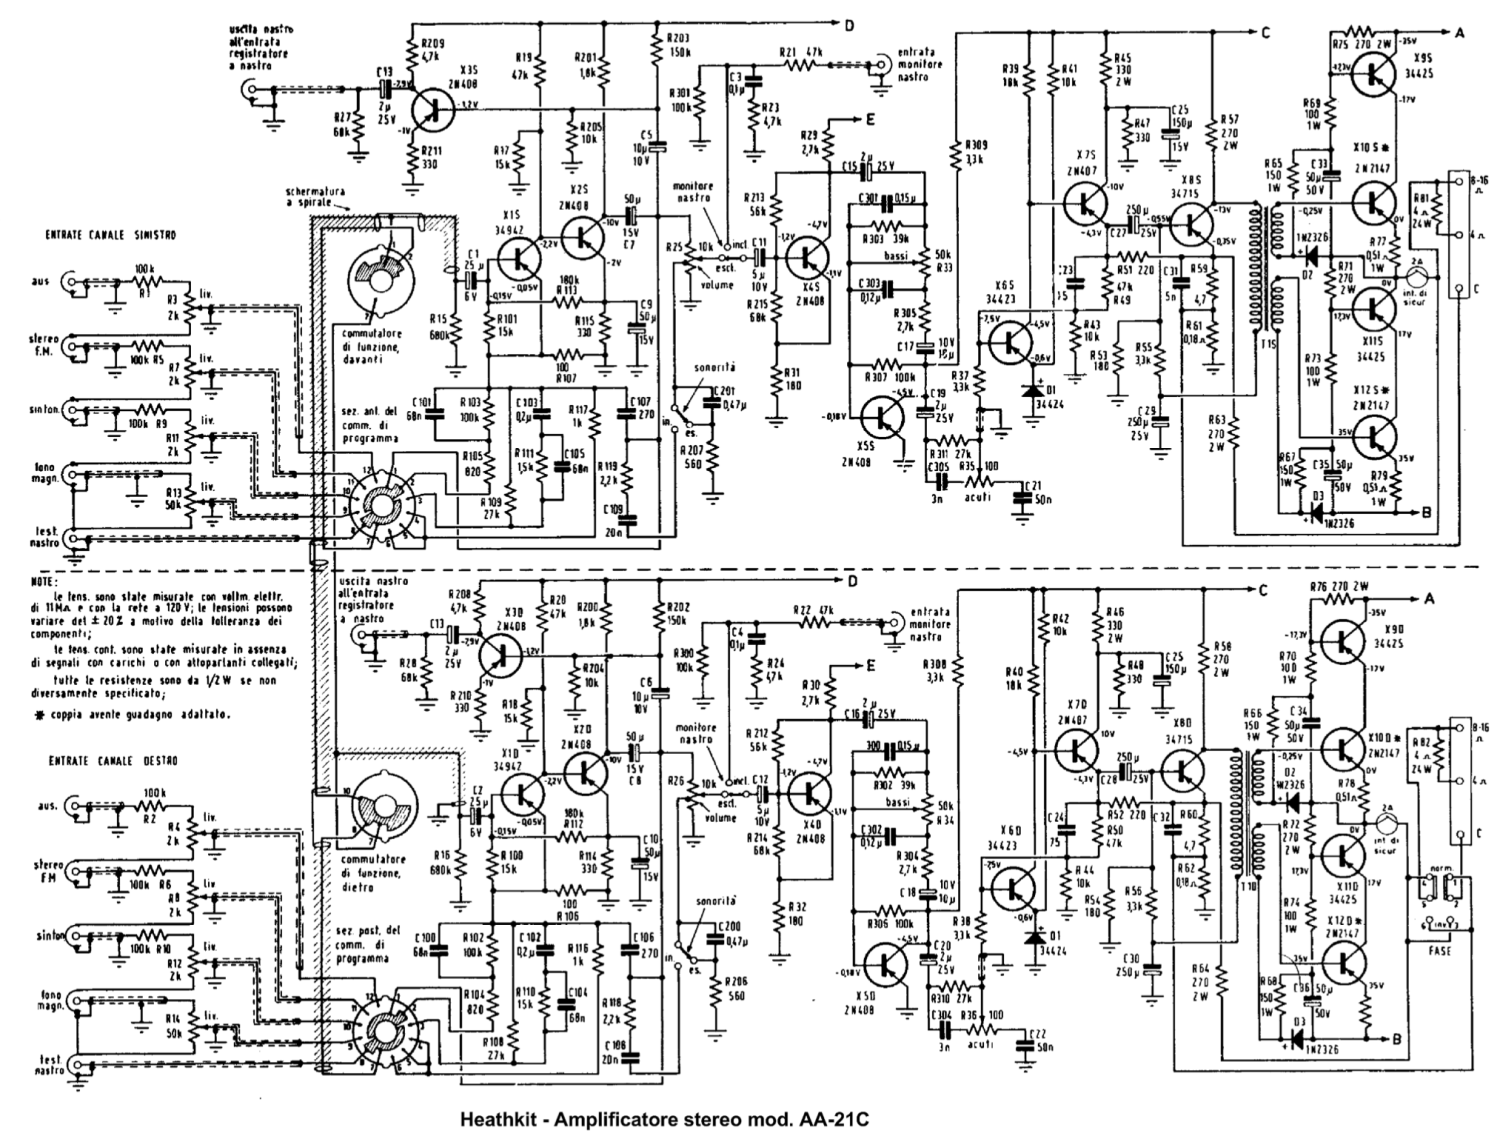 Heathkit AA-21C Stereo Amplifier - Schematic Diagram